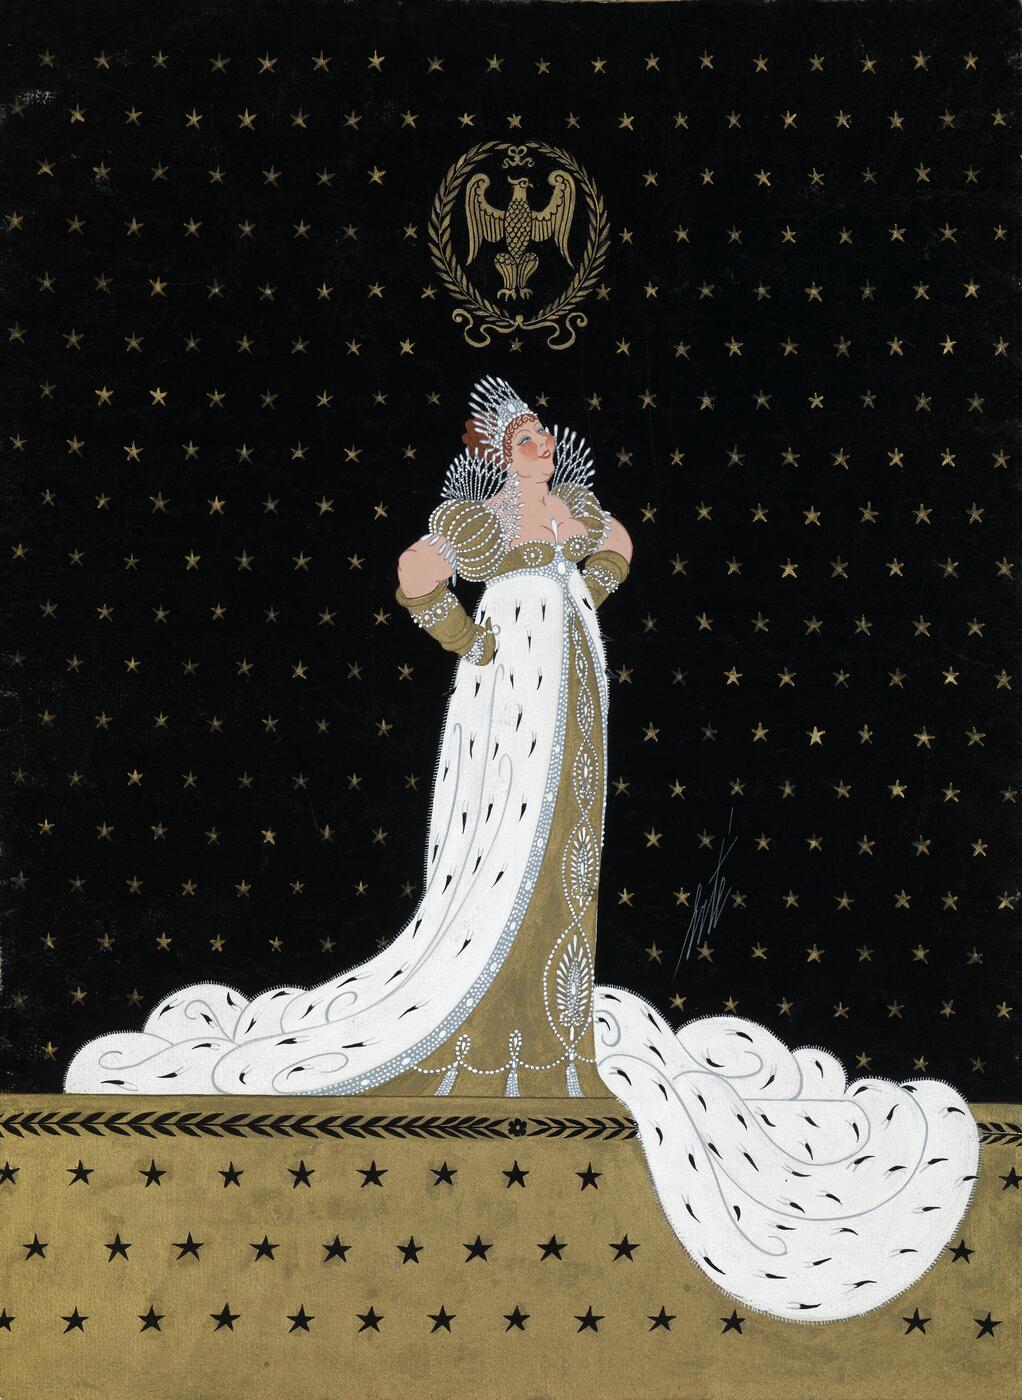 Costume Design for "Madame Sans-Gêne" from "Le Triomphe de la Femme"